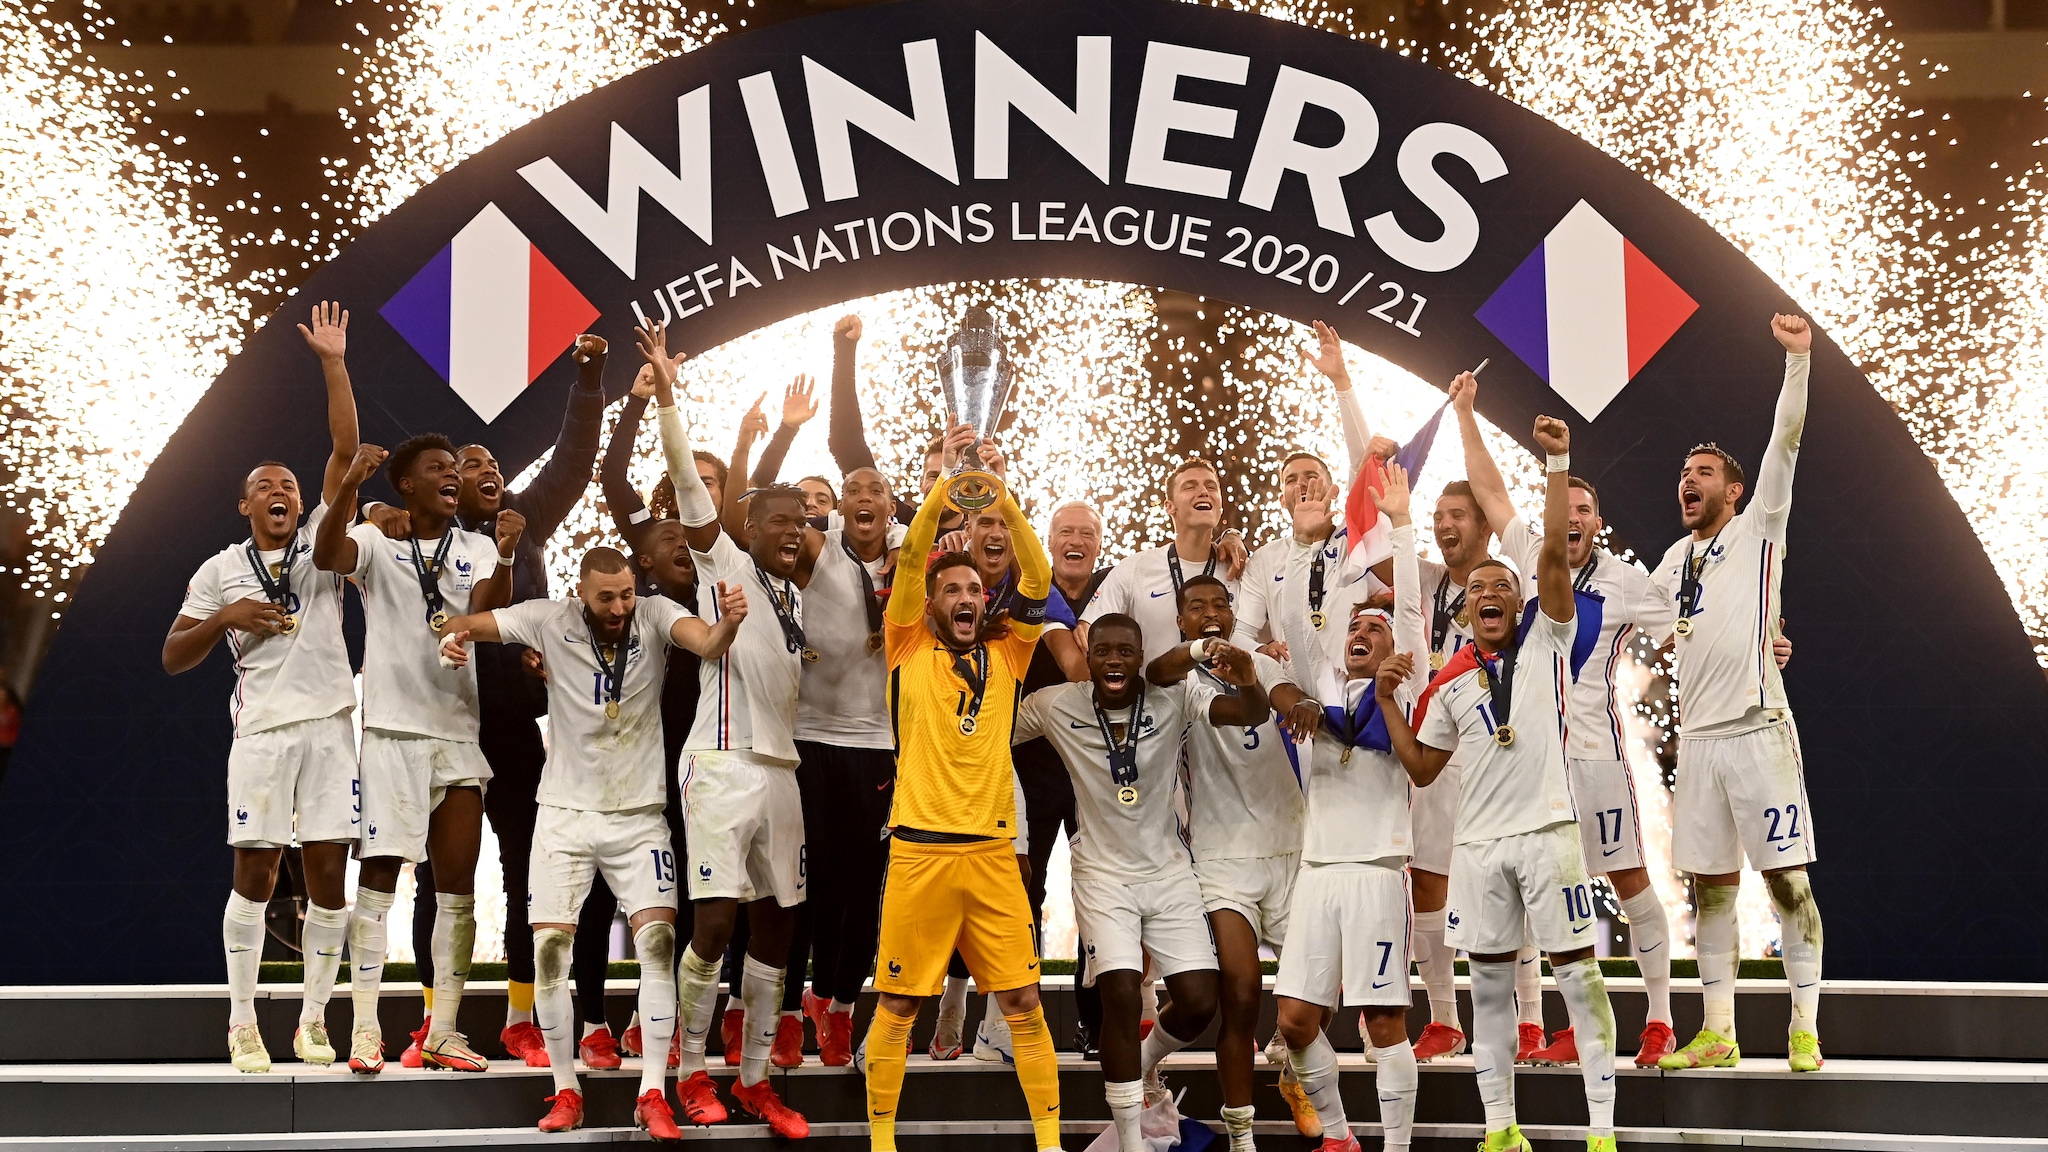 Ganar la nations league te da acceso a la eurocopa